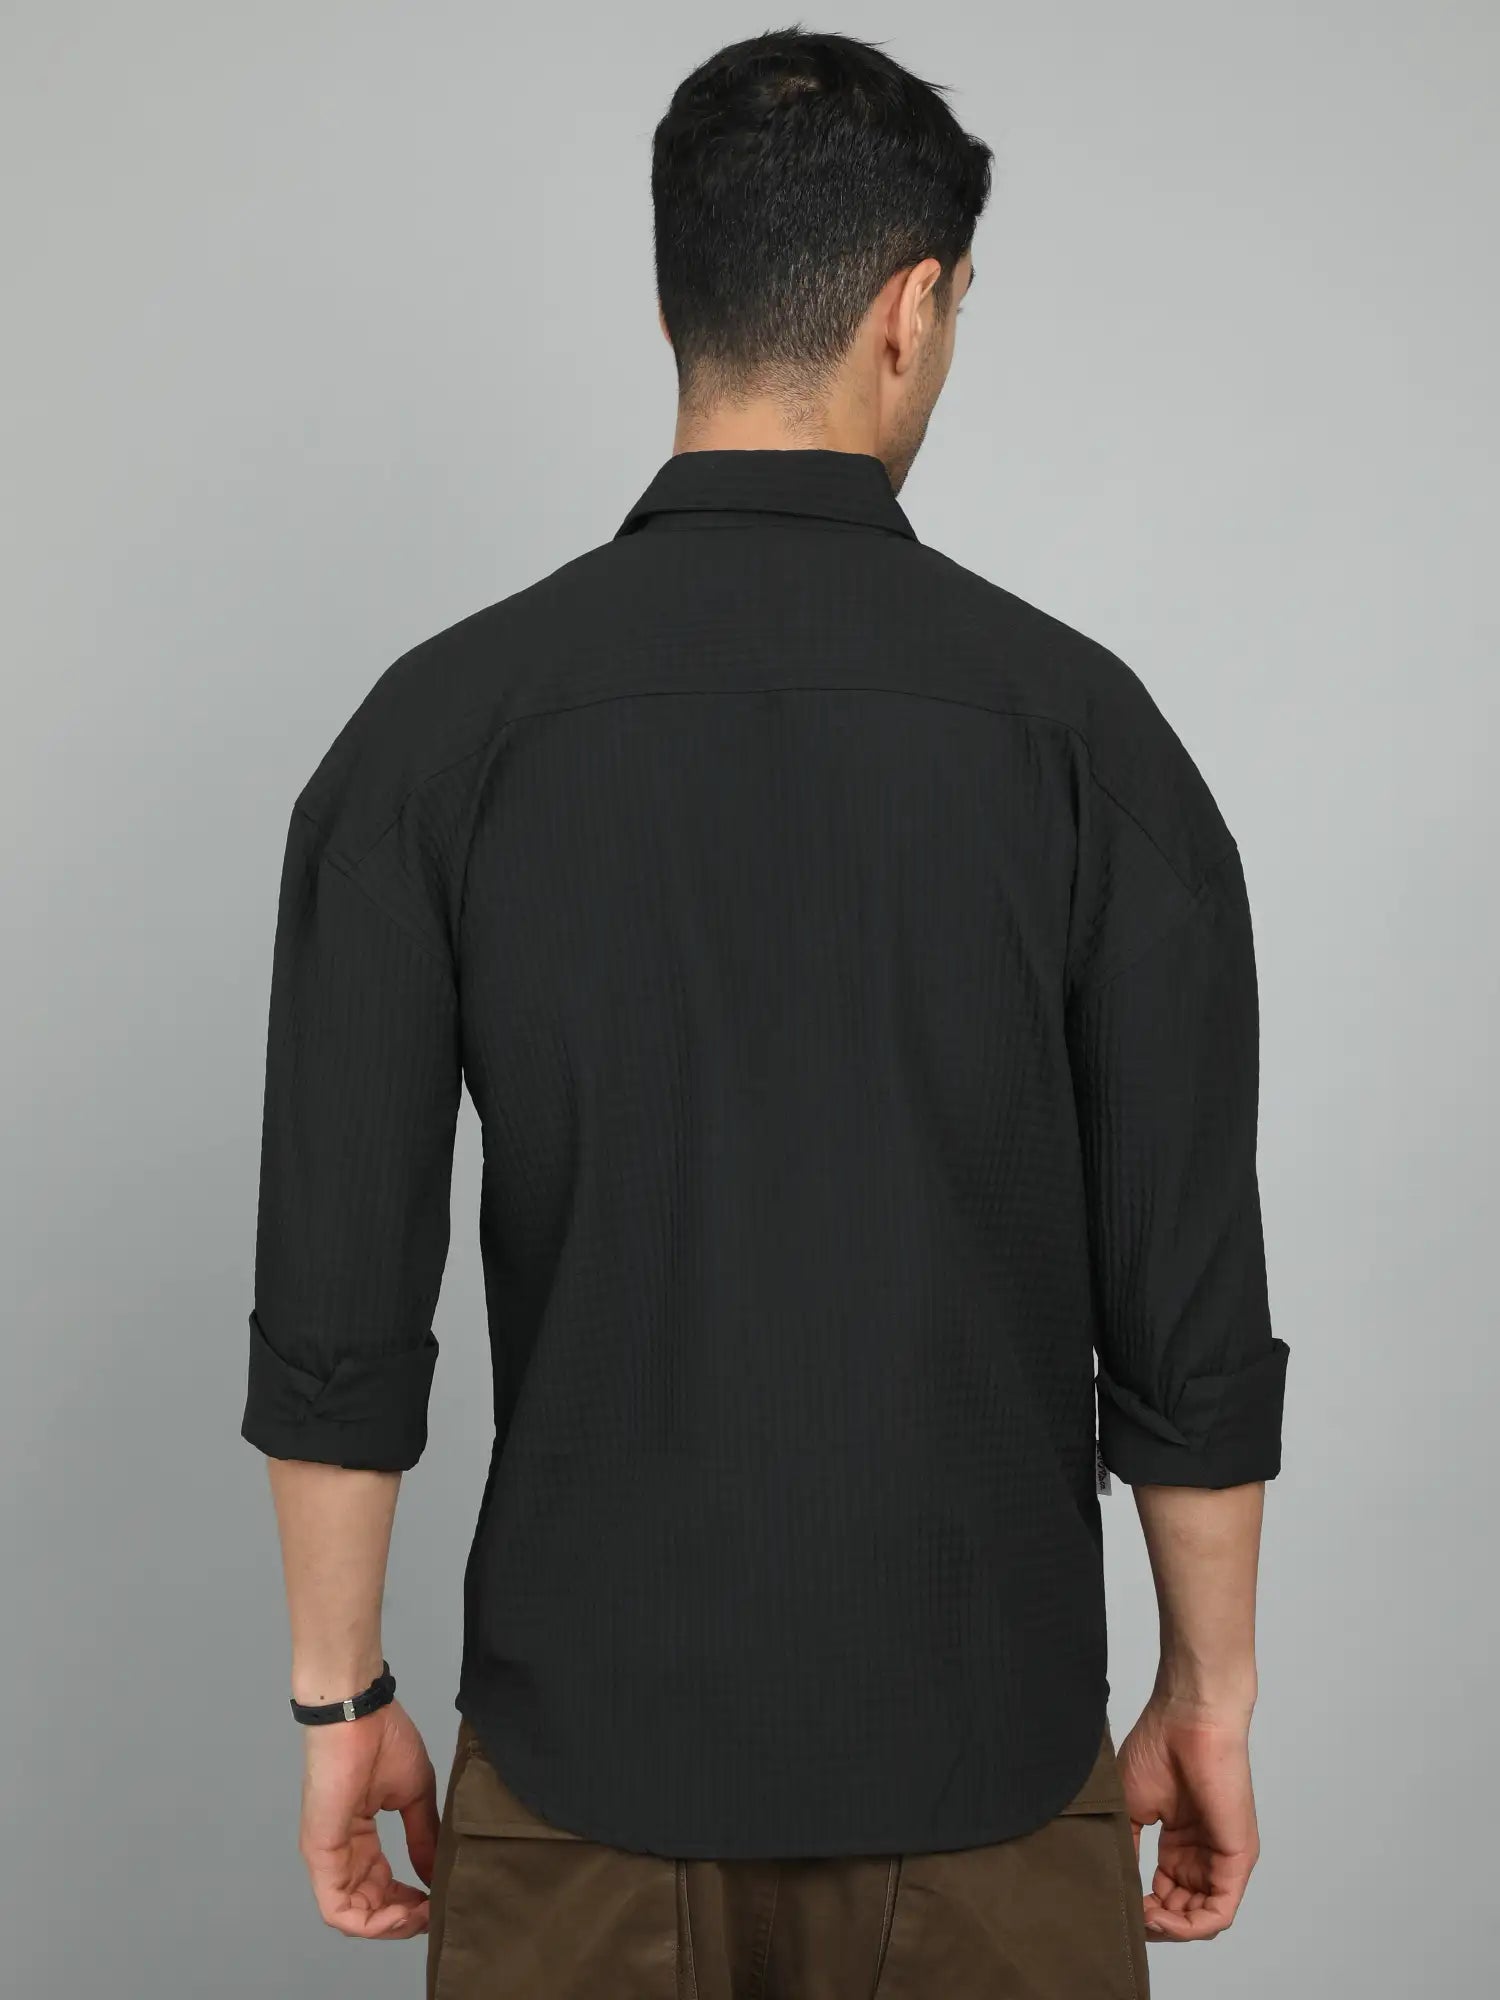 Timeless Charm Black Imported Drop Shoulder Shirt for Men 